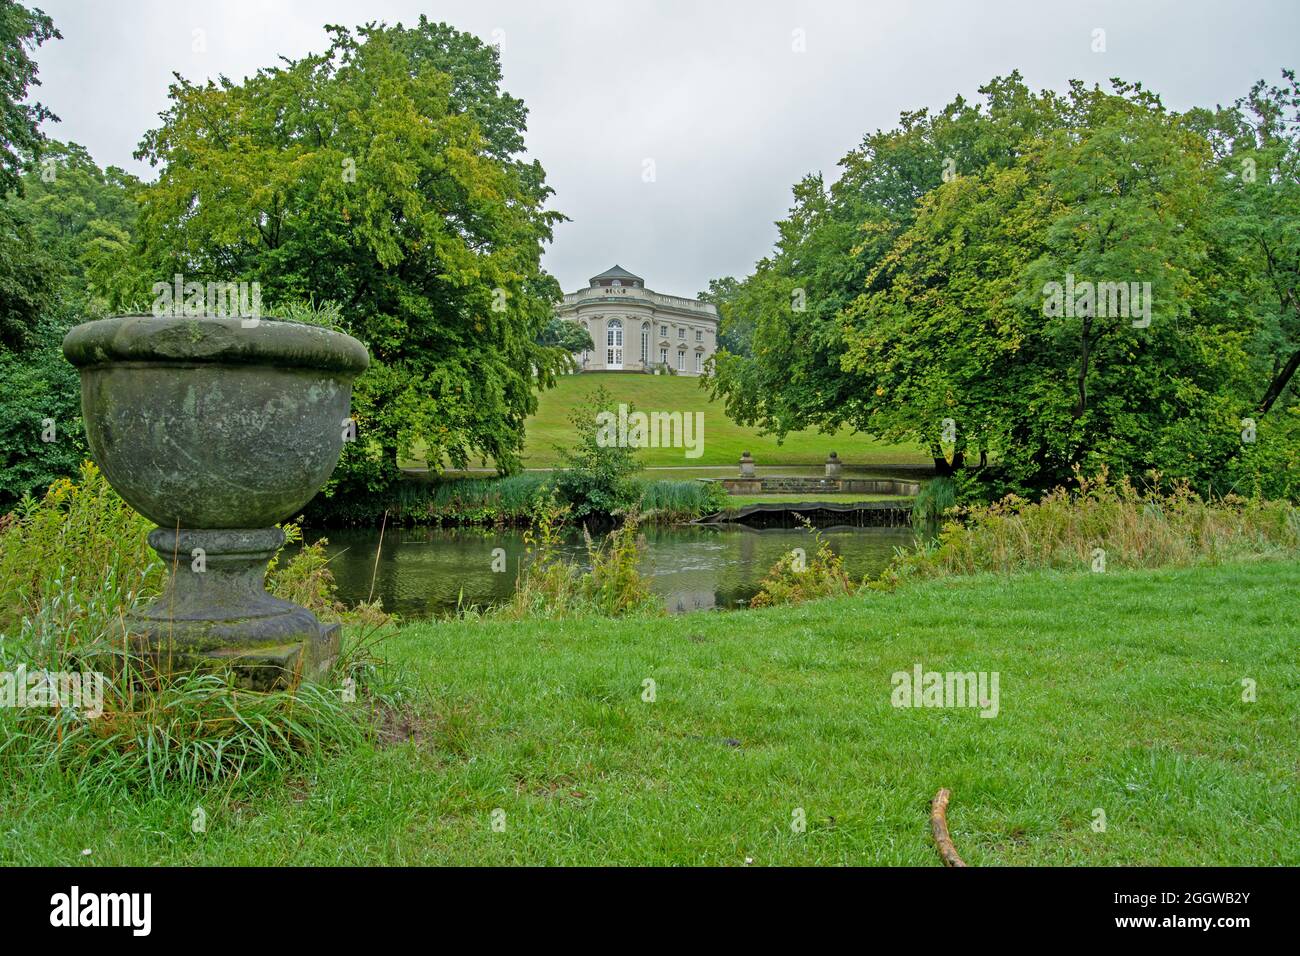 Braunschweig, Parkanlage alter Schiffsanleger in der Ferne das Schloss Richmond,der Fluss (oker) als Bild Mitte Ein Steinblumentopf im Vordergrund Foto de stock